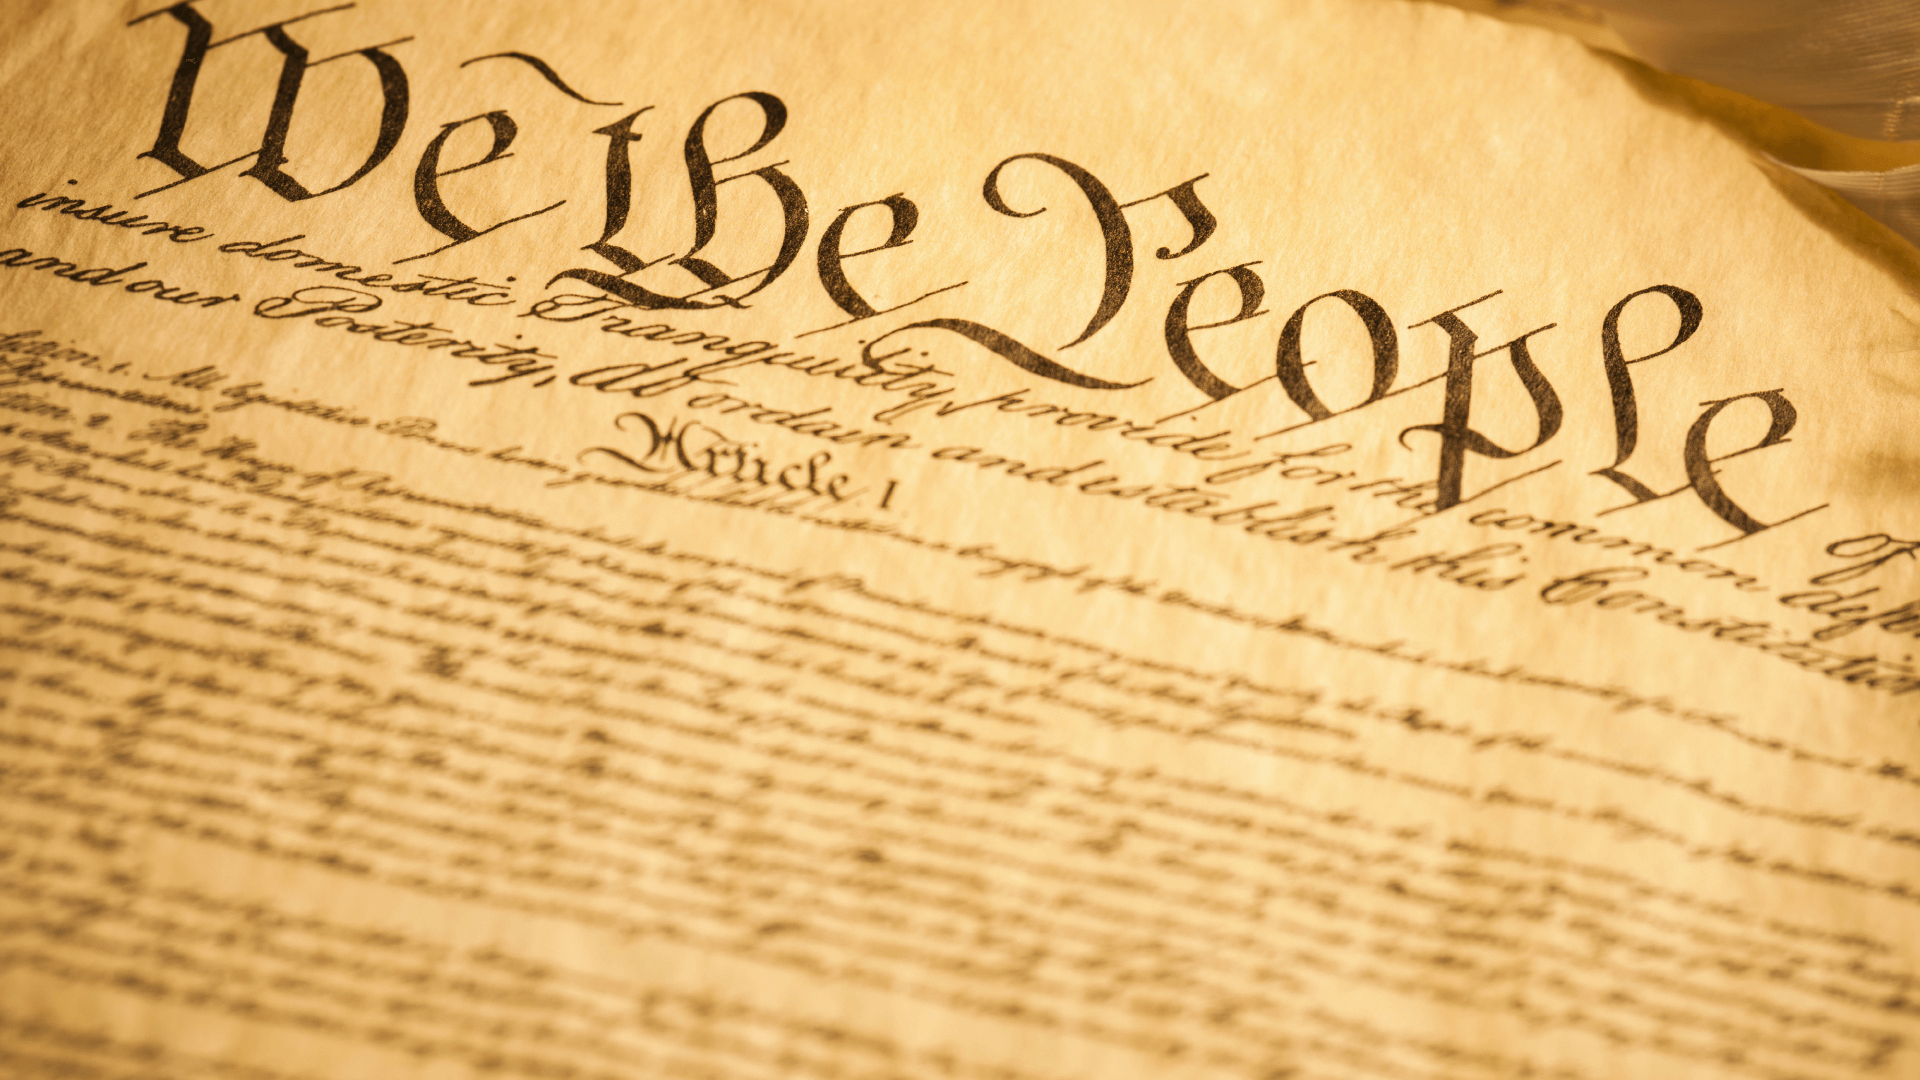 Конституция 1787 текст. Конституция США фотография 1787. Конституция 1787 года США фото. Конституция США 1787 книга. Конституция США 1787 фон.